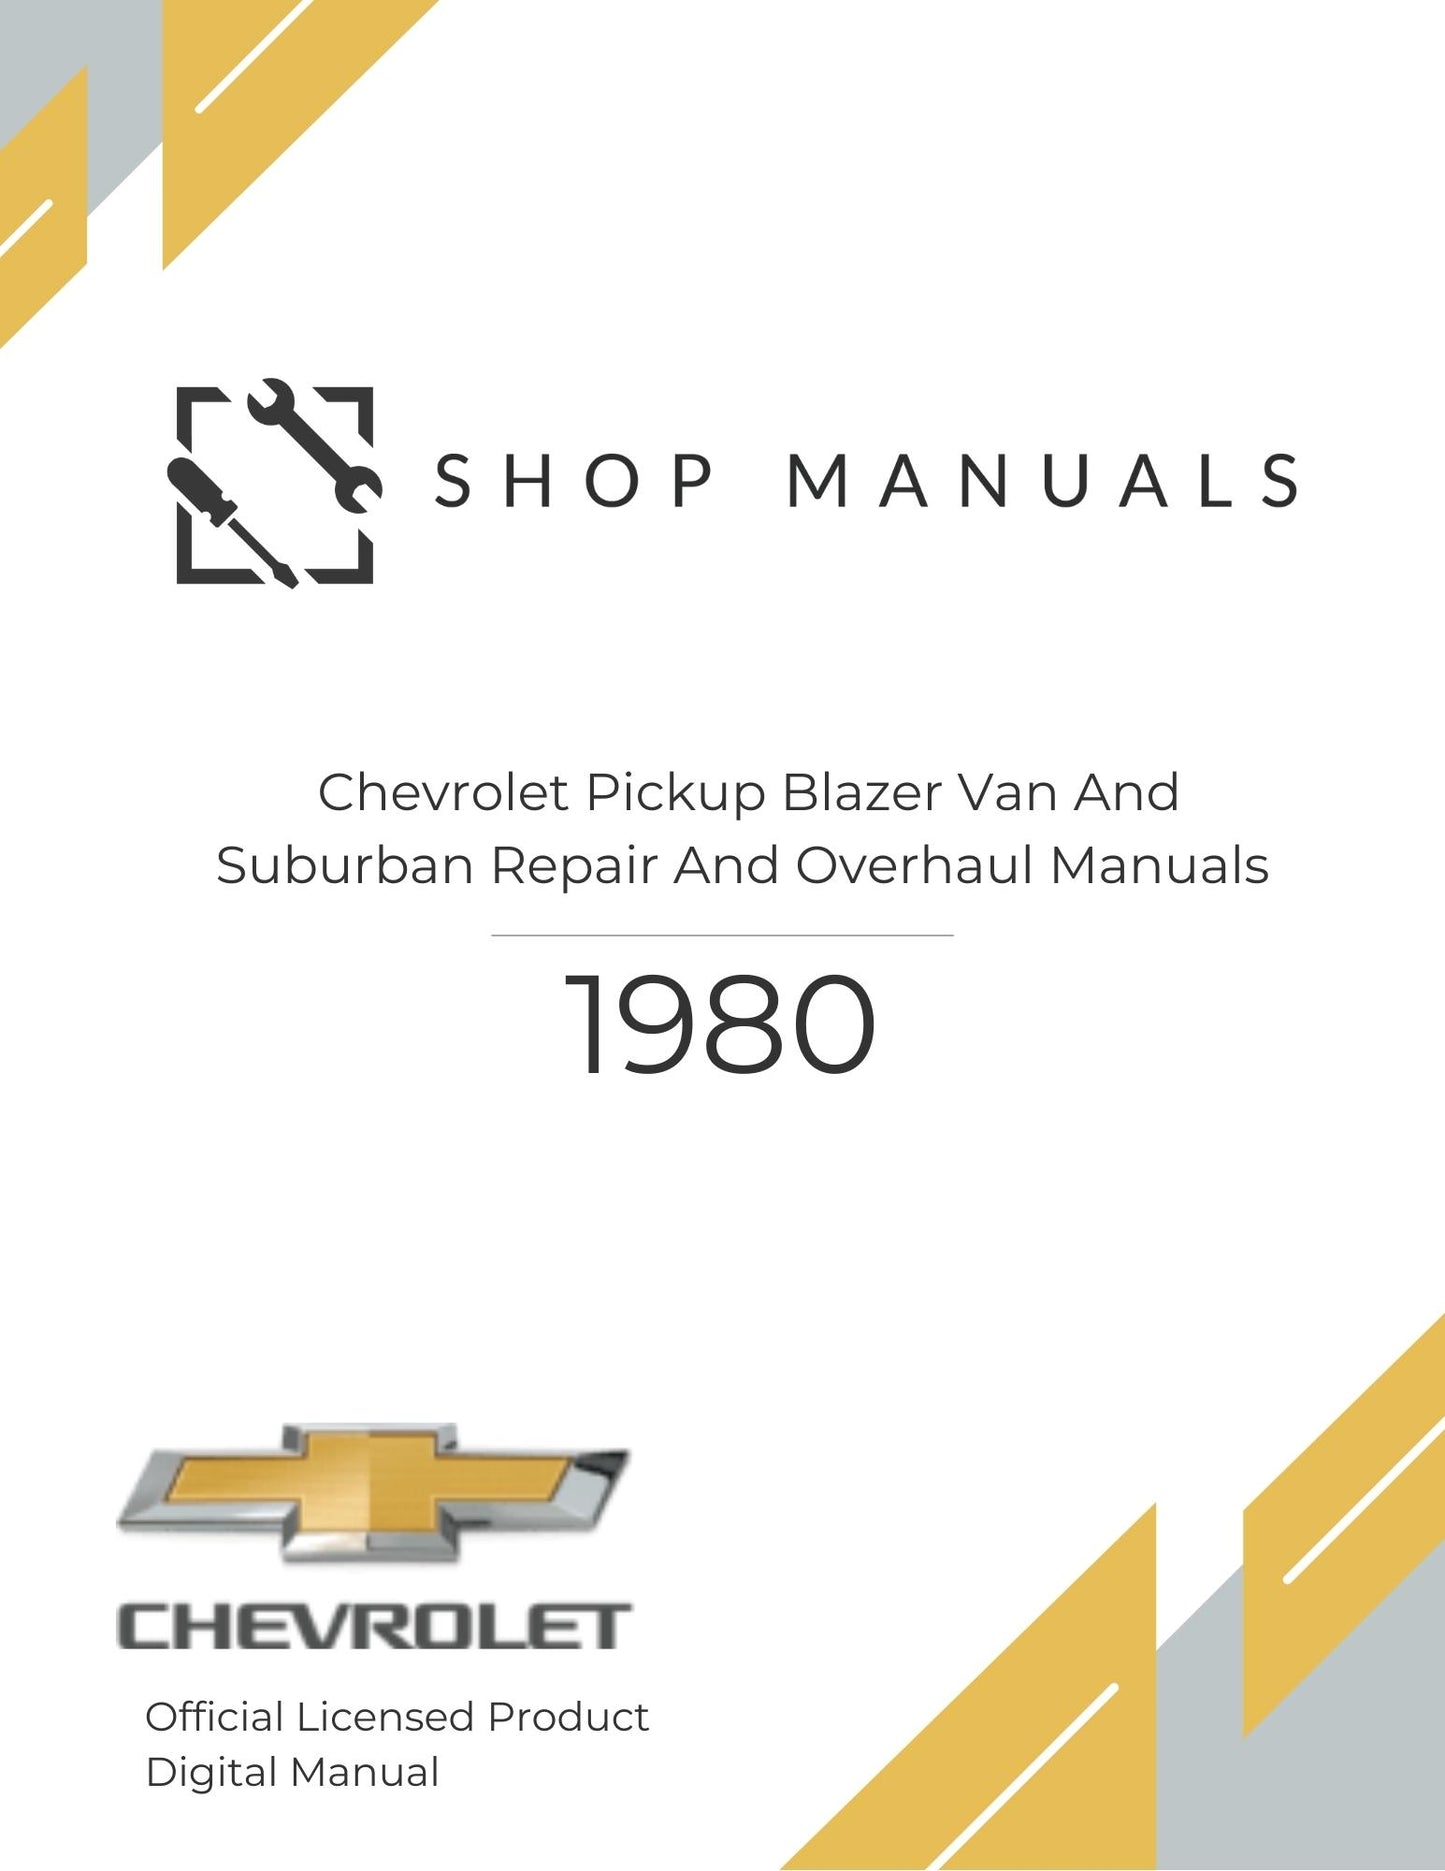 1980 Chevrolet Pickup Blazer Van And Suburban Repair And Overhaul Manuals